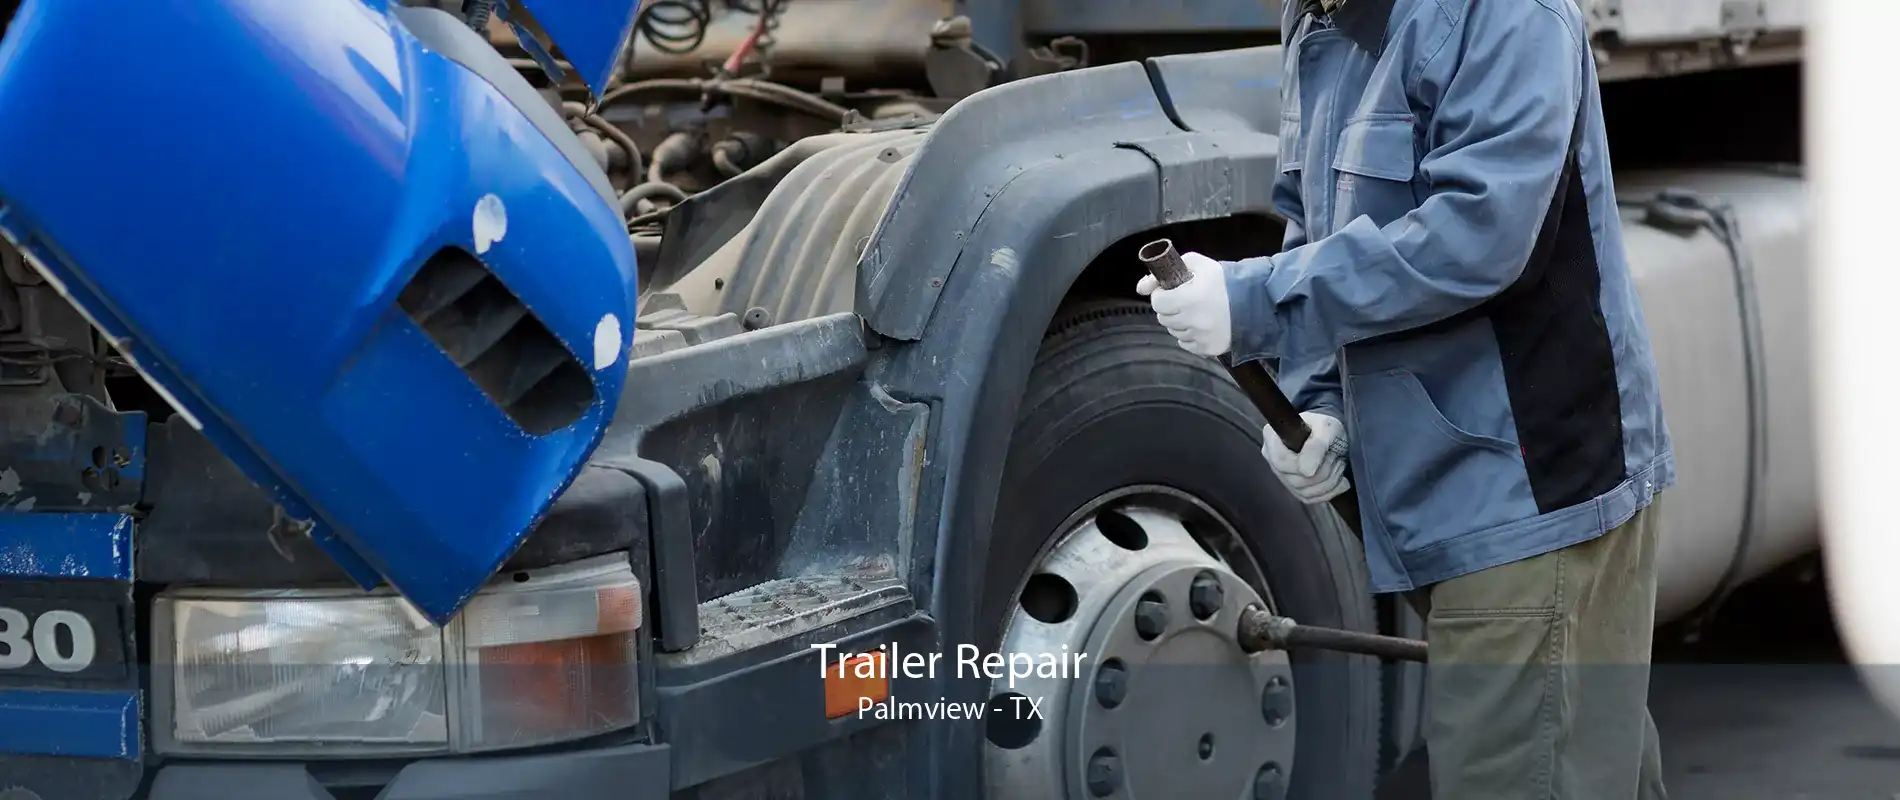 Trailer Repair Palmview - TX